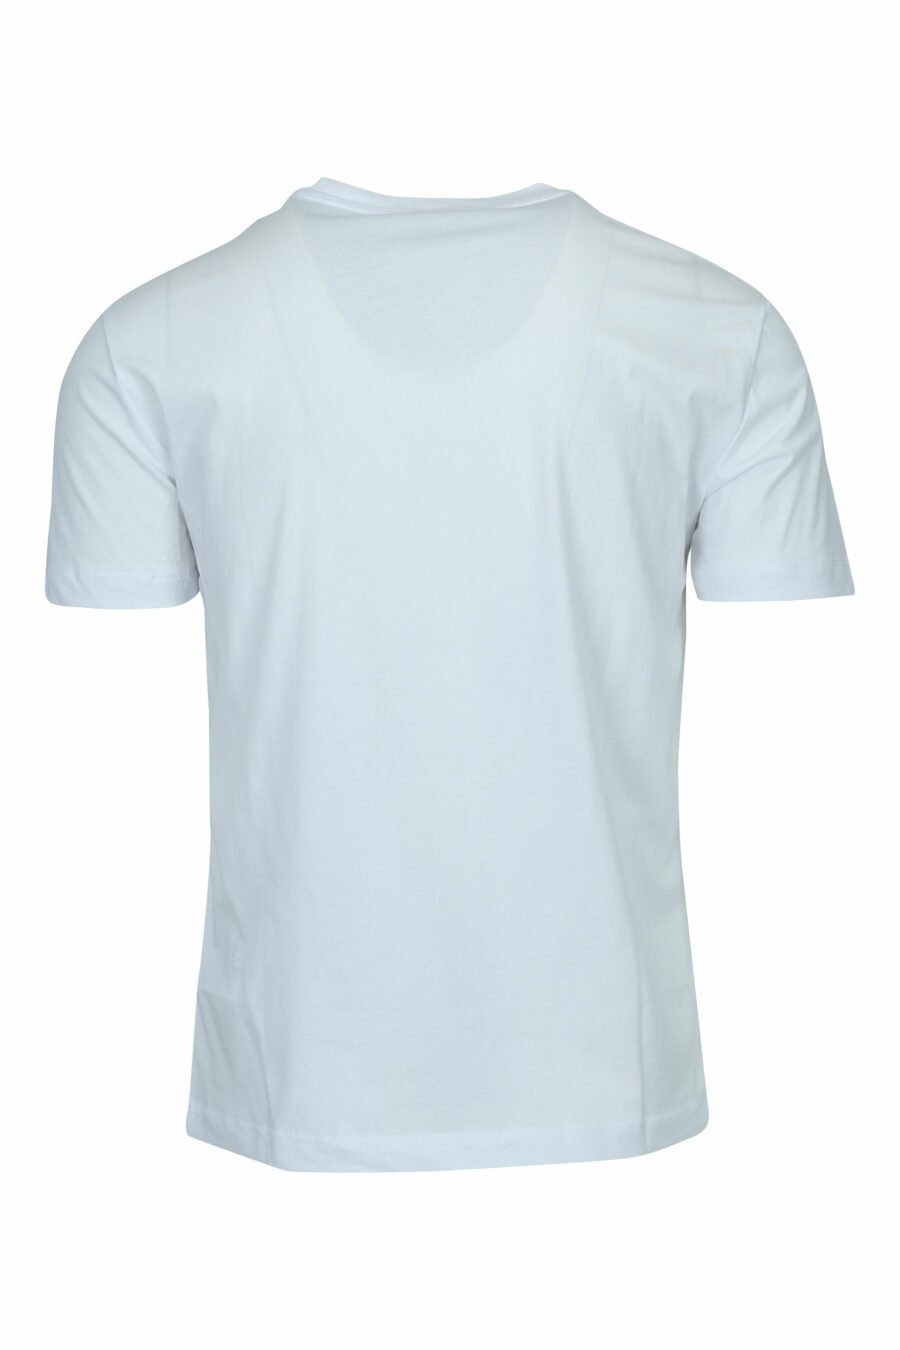 Weißes T-Shirt mit "lux identity" Maxilogo im Farbverlauf - 8057970673118 1